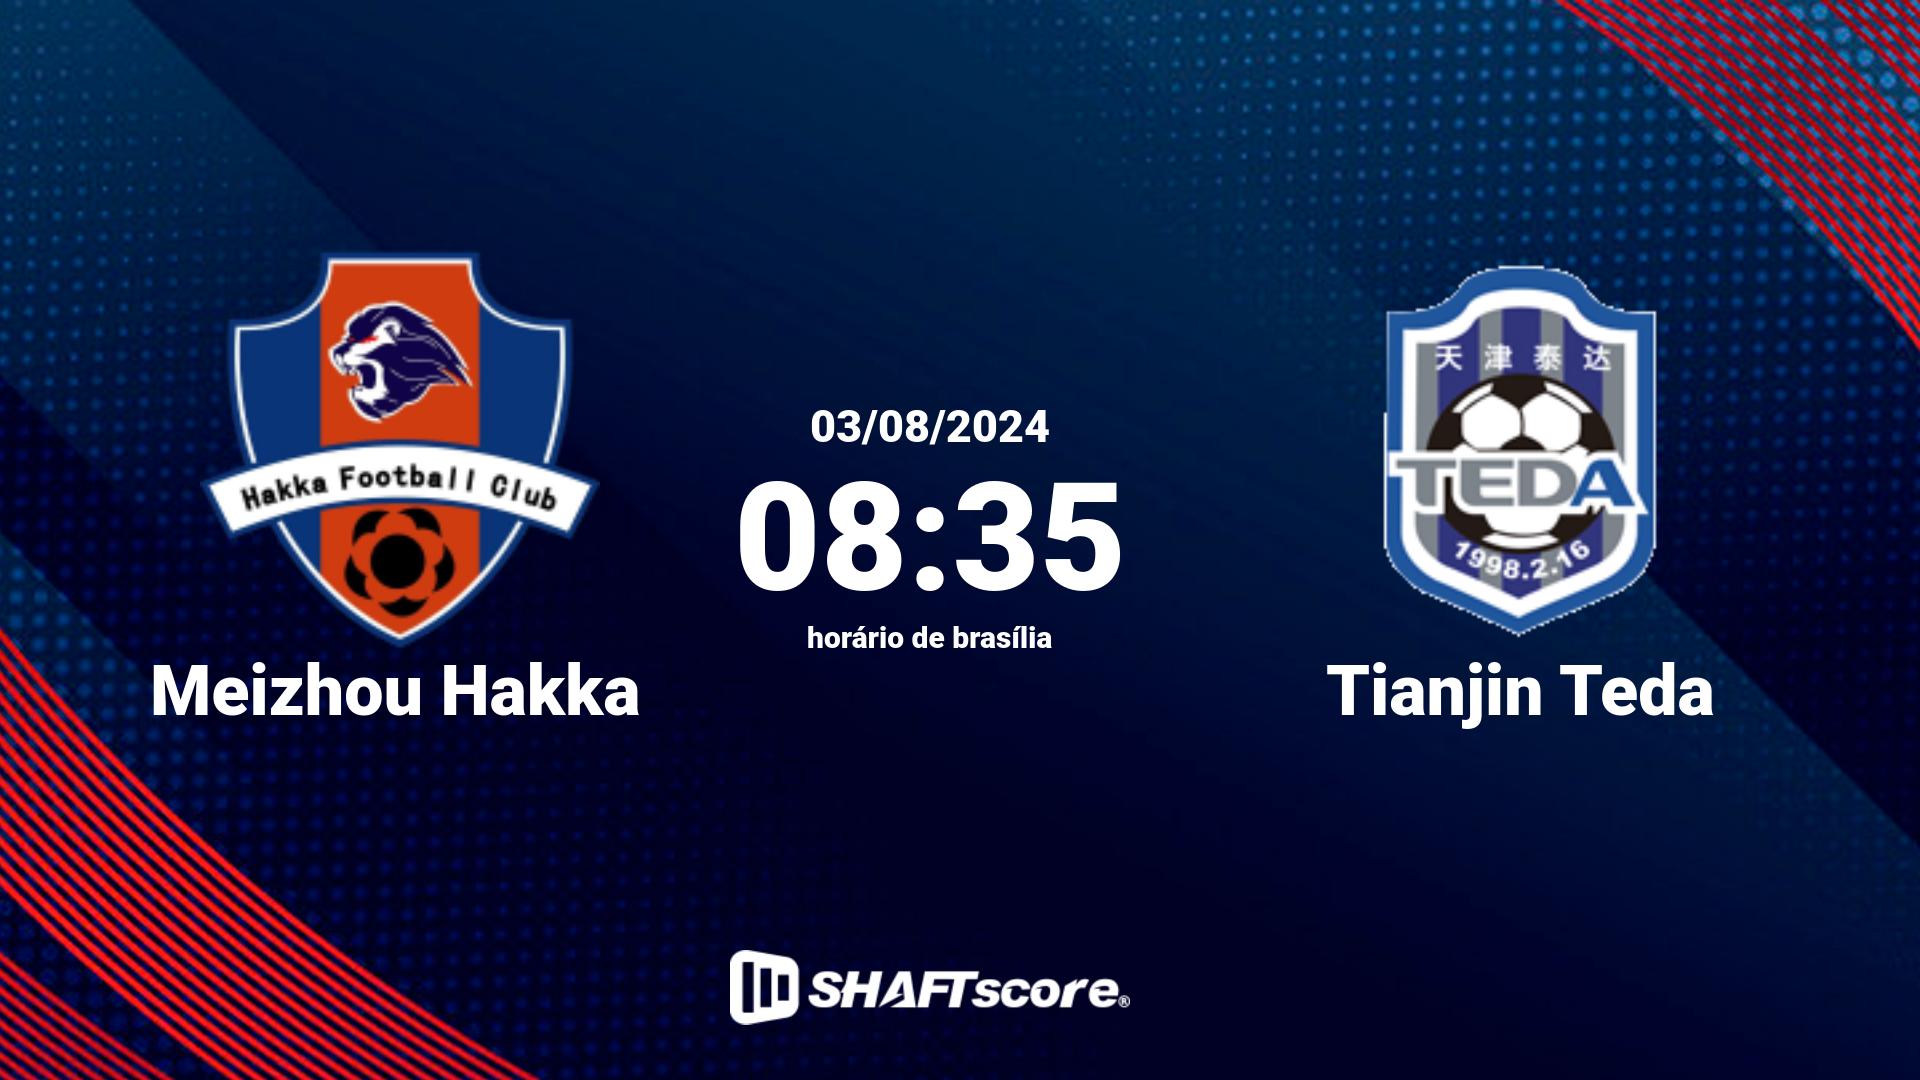 Estatísticas do jogo Meizhou Hakka vs Tianjin Teda 03.08 08:35